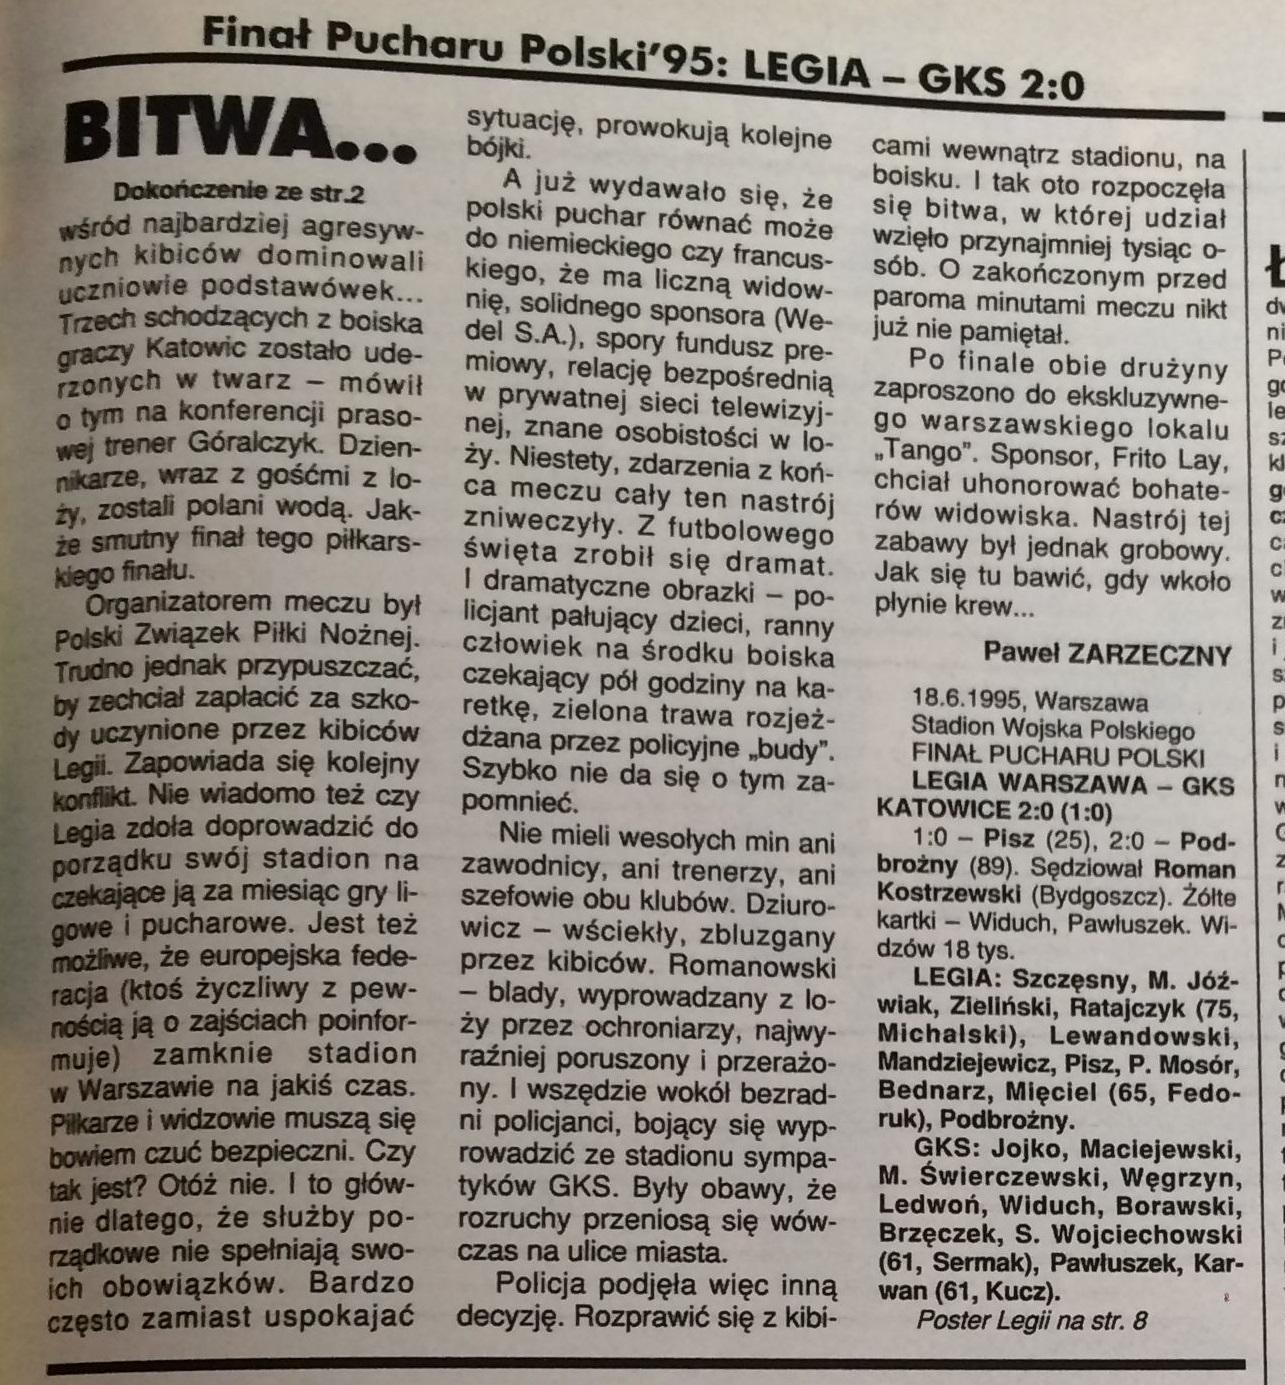 Piłka nożna po meczu Legia - Katowice 2:0 (18.06.1995)